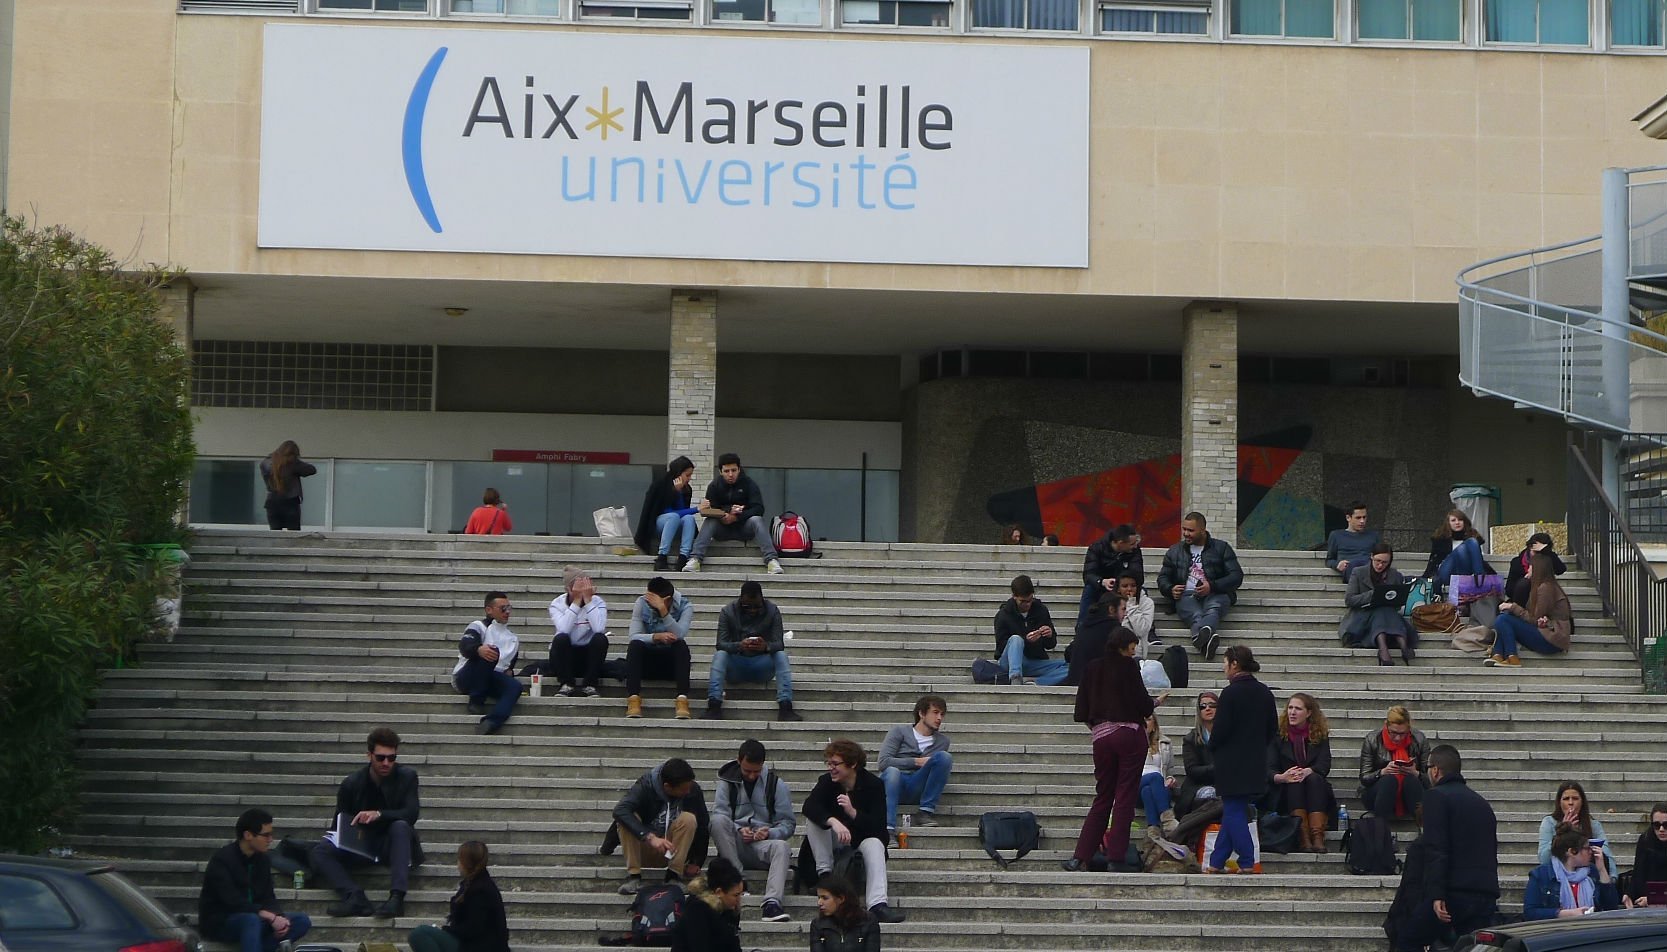 لكل الطلاب اعلان عن منح دراسية للماجستير والدكتوراه في جامعة إيكس مرسيليا بفرنسا 2021